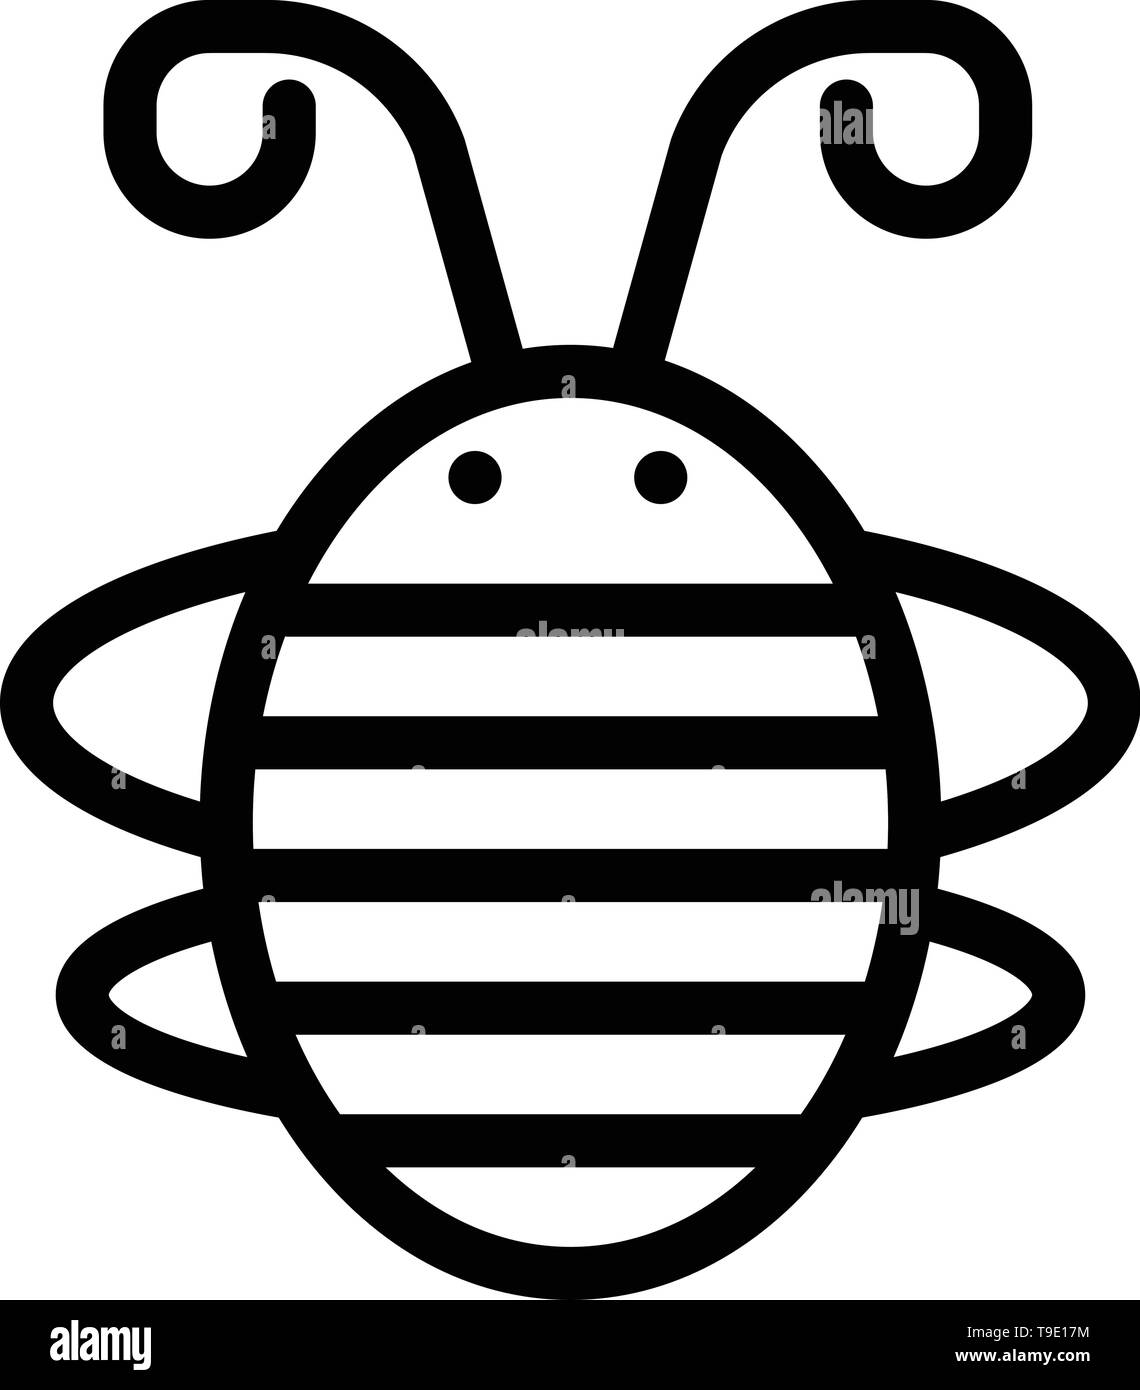 Biene Insekt, Käfer, Käfer, Marienkäfer, Marienkäfer Blau und Rot Jetzt herunterladen und Web Widget Karte Vorlage kaufen Stock Vektor